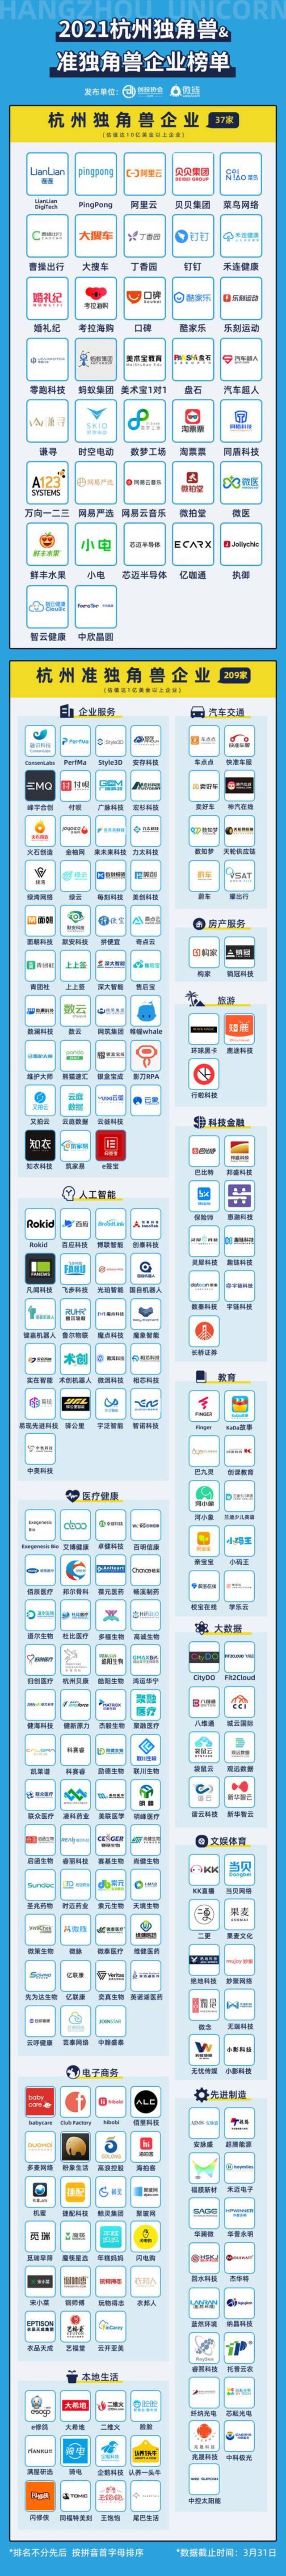 《2021杭州独角兽&准独角兽企业榜单》发布 阿里云等上榜